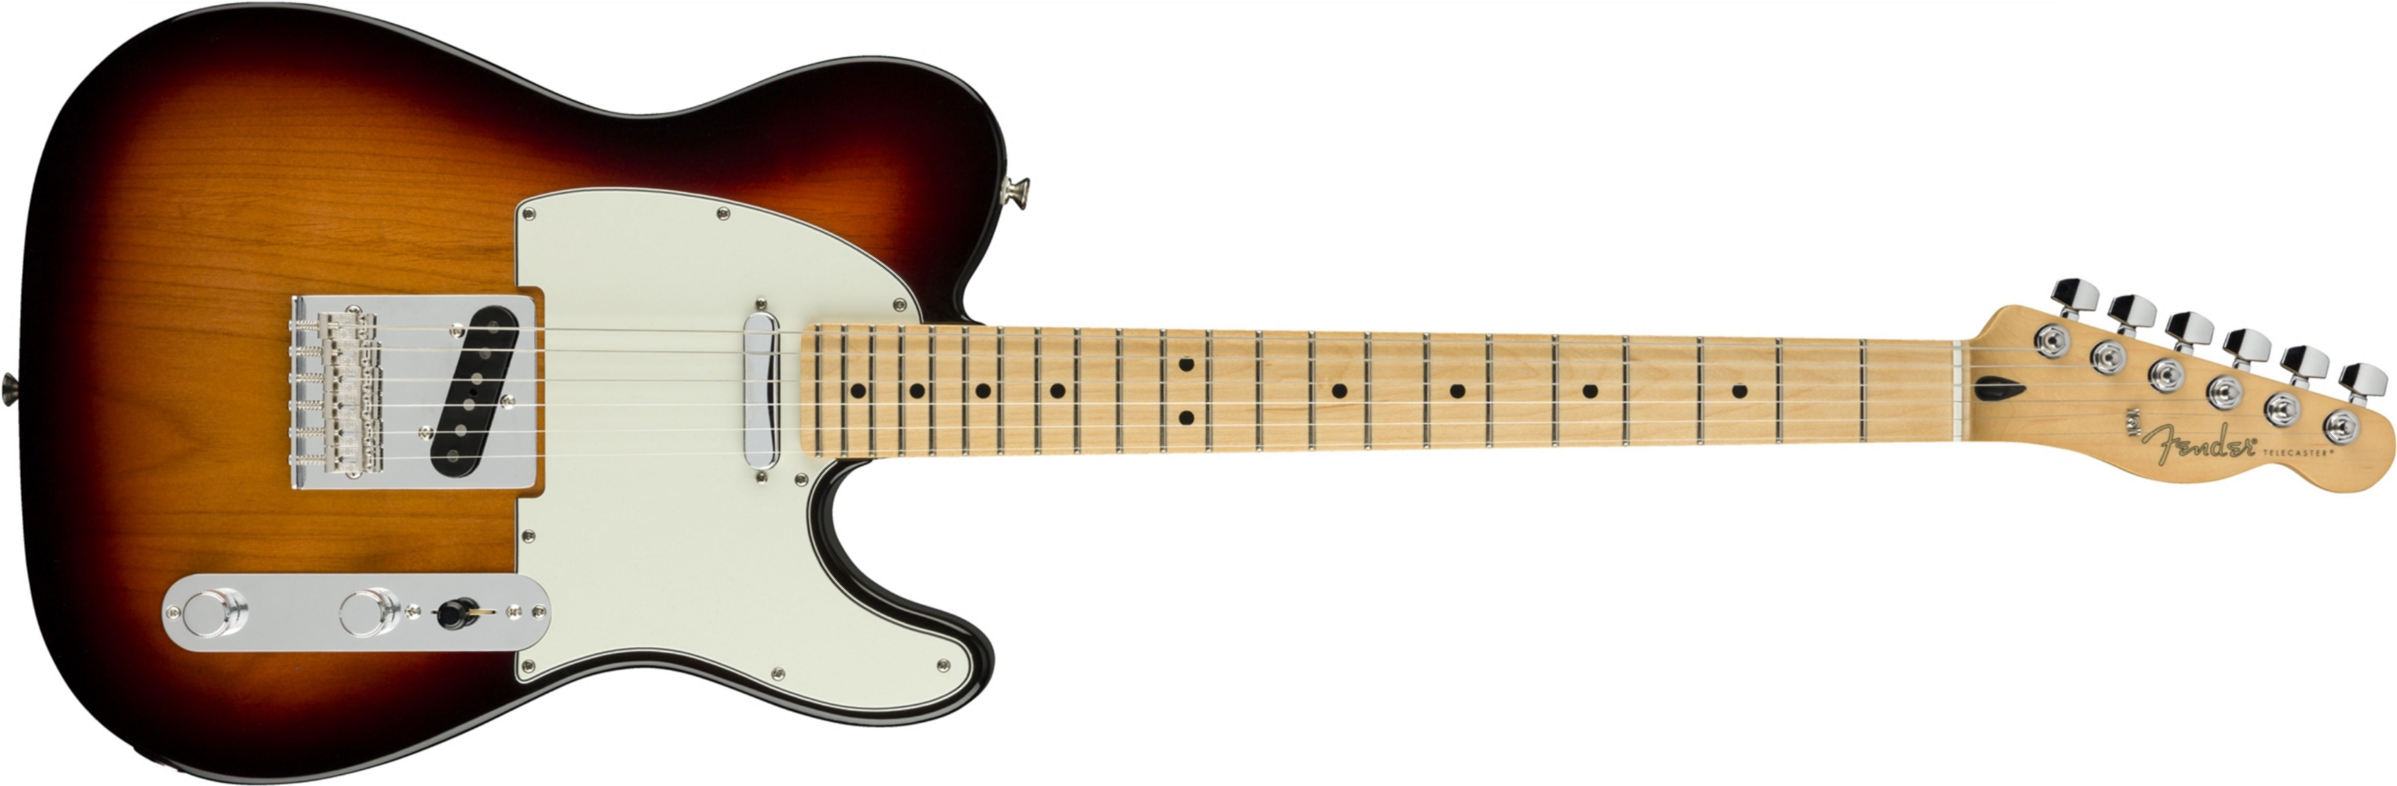 Fender Tele Player Mex Mn - 3-color Sunburst - E-Gitarre in Teleform - Main picture